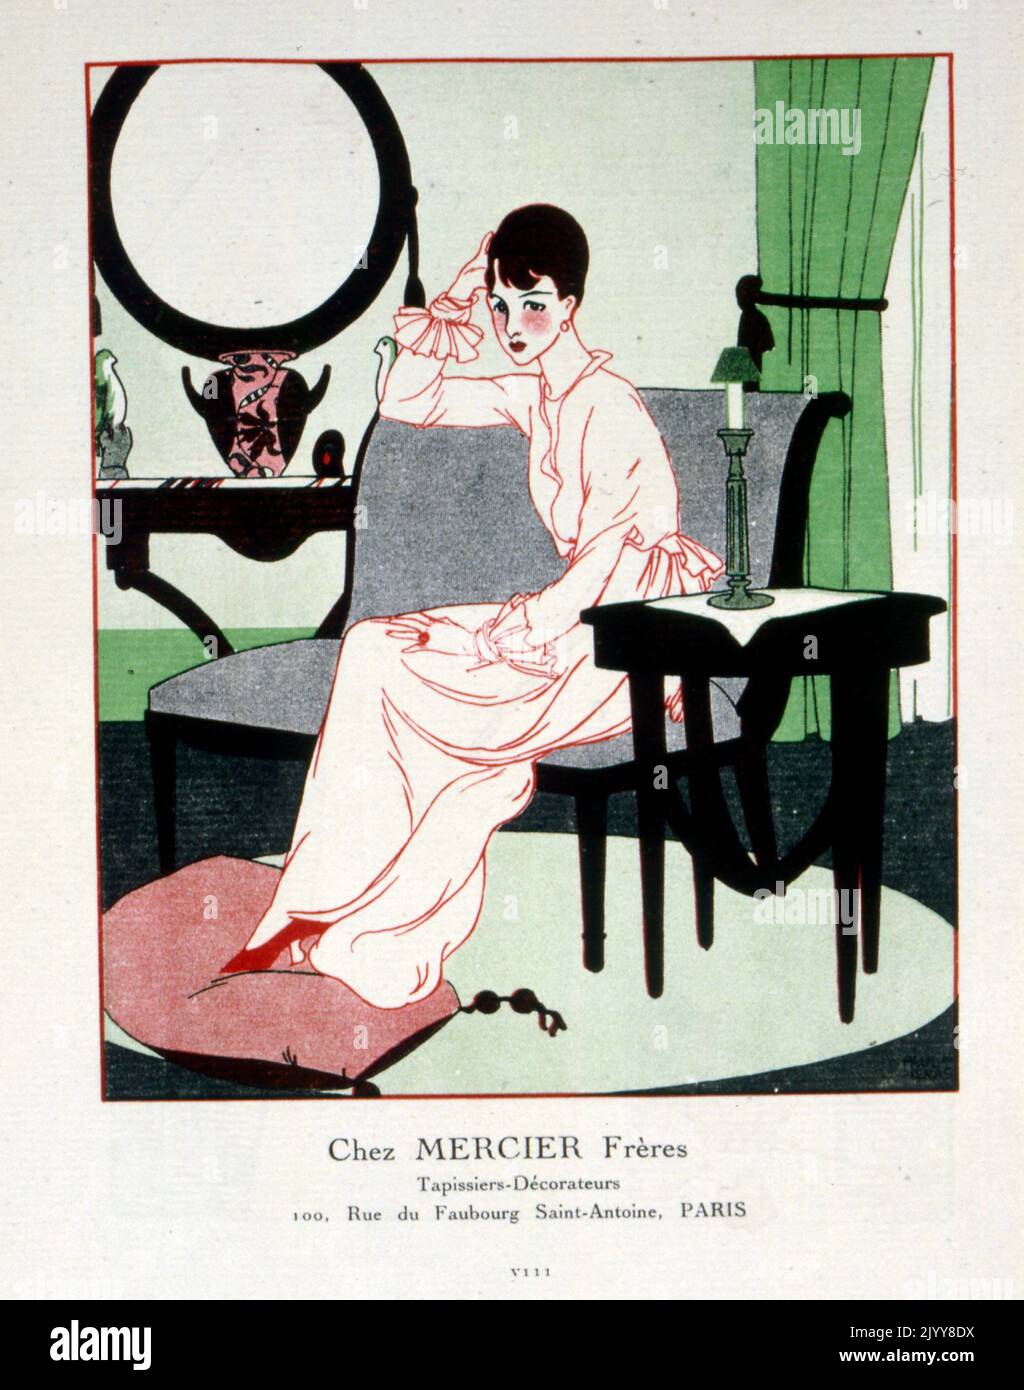 Eine farbige Zeichnung einer Dame, die mit ihren Füßen auf einem Poof auf einer Couch sitzt, mit dem Titel „chez Mercier Freres“. Innenarchitekten in der Rue Faubourg, Saint-Antoine, Paris. Stockfoto